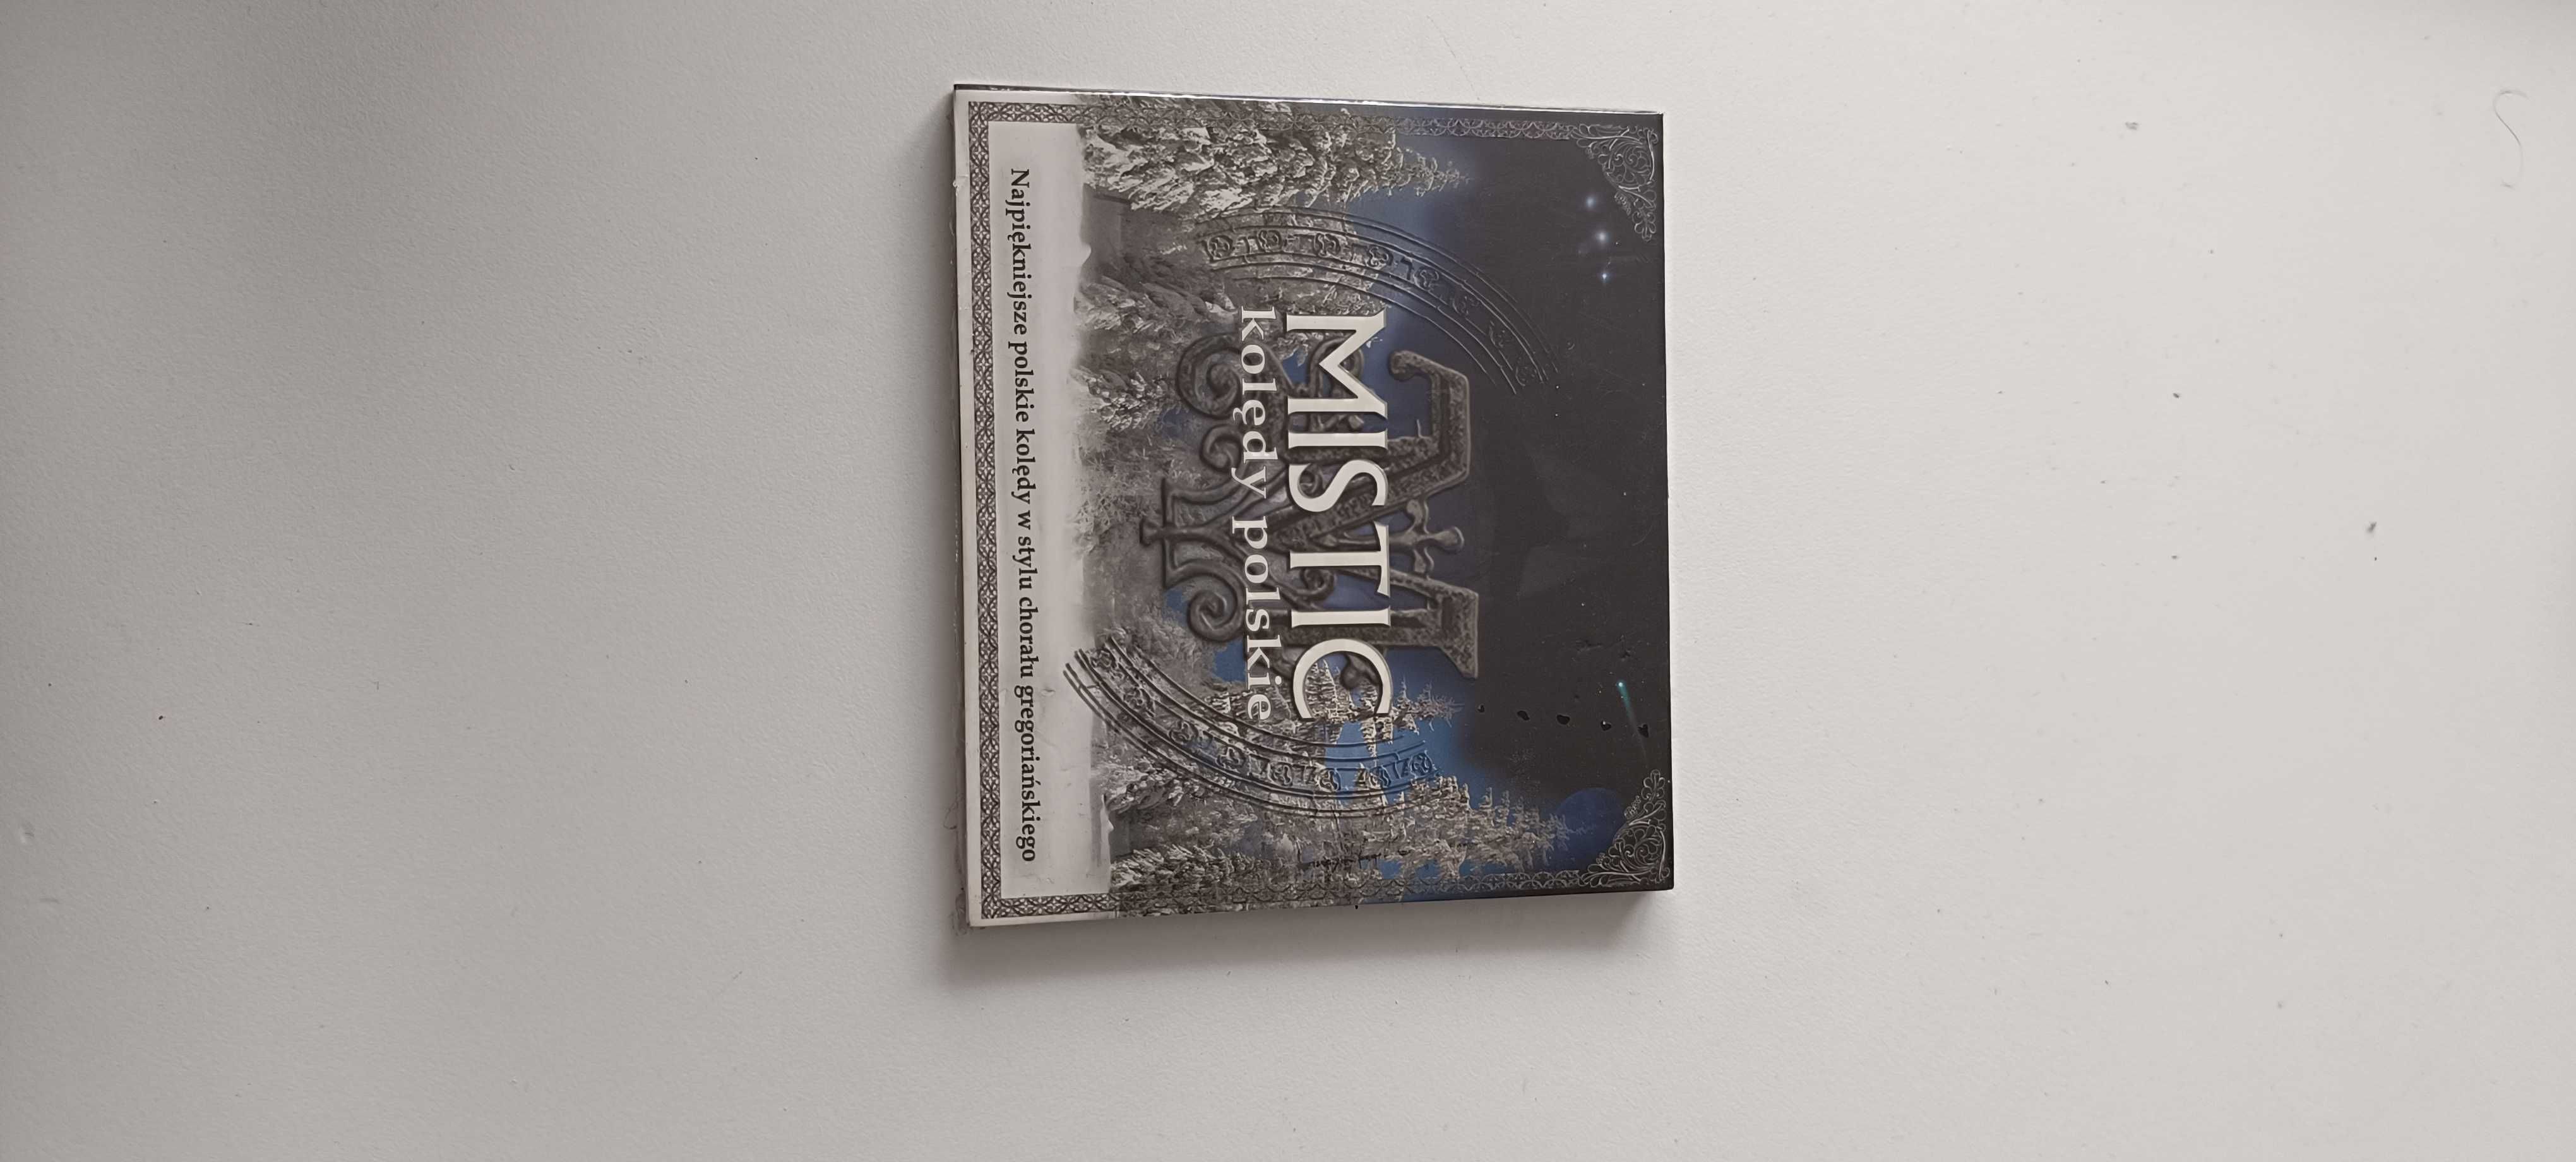 CD nowe zafoliowane, Kolędy Polskie Mistic